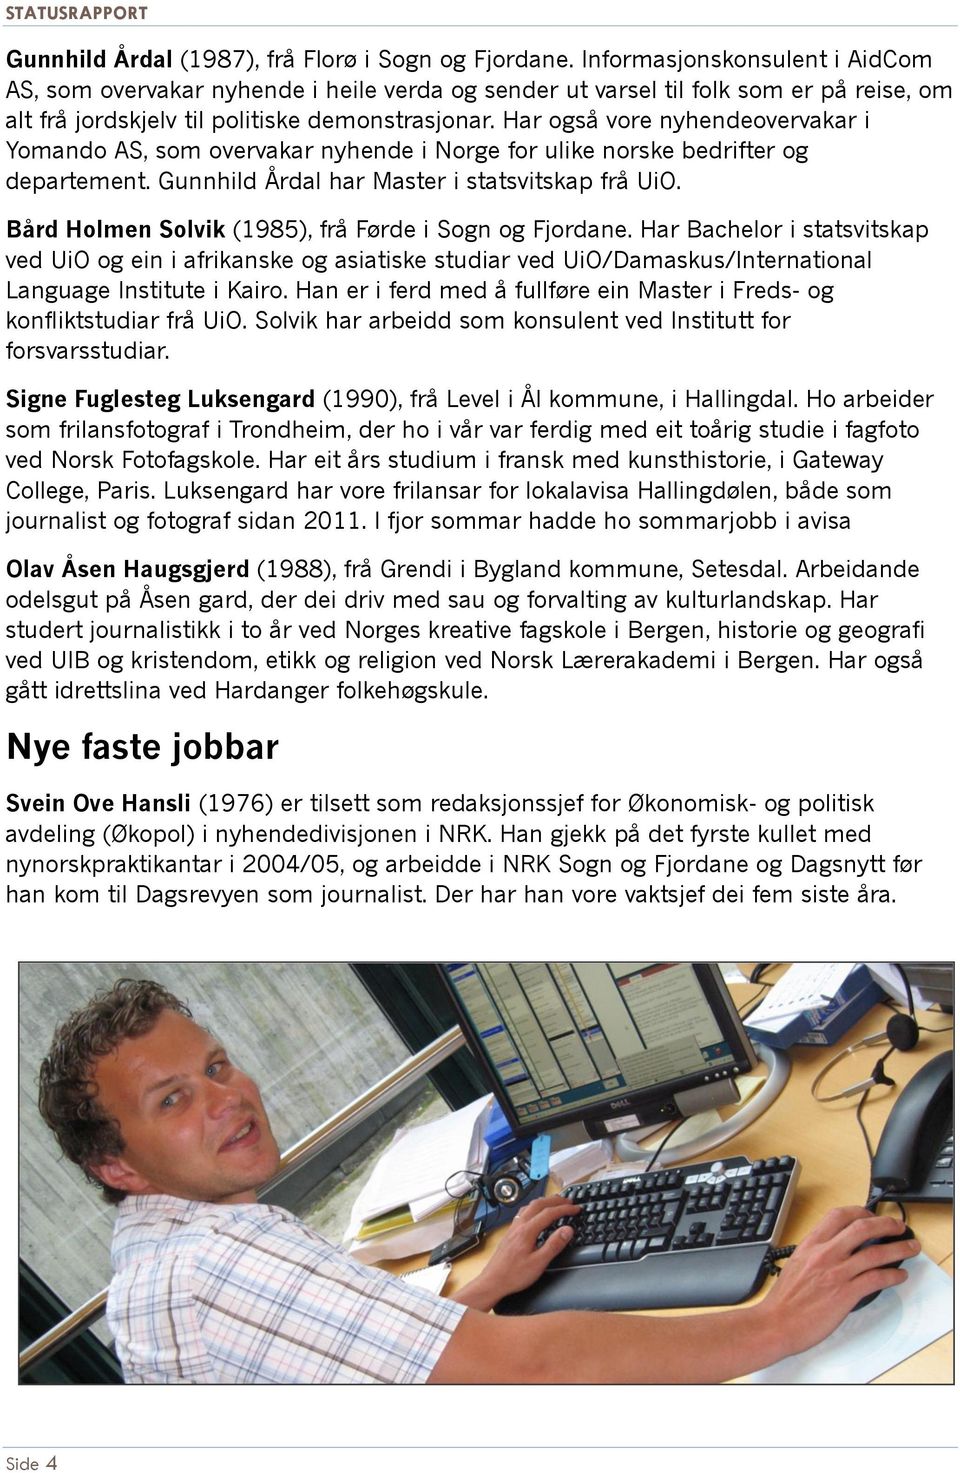 Har også vore nyhendeovervakar i Yomando AS, som overvakar nyhende i Norge for ulike norske bedrifter og departement. Gunnhild Årdal har Master i statsvitskap frå UiO.